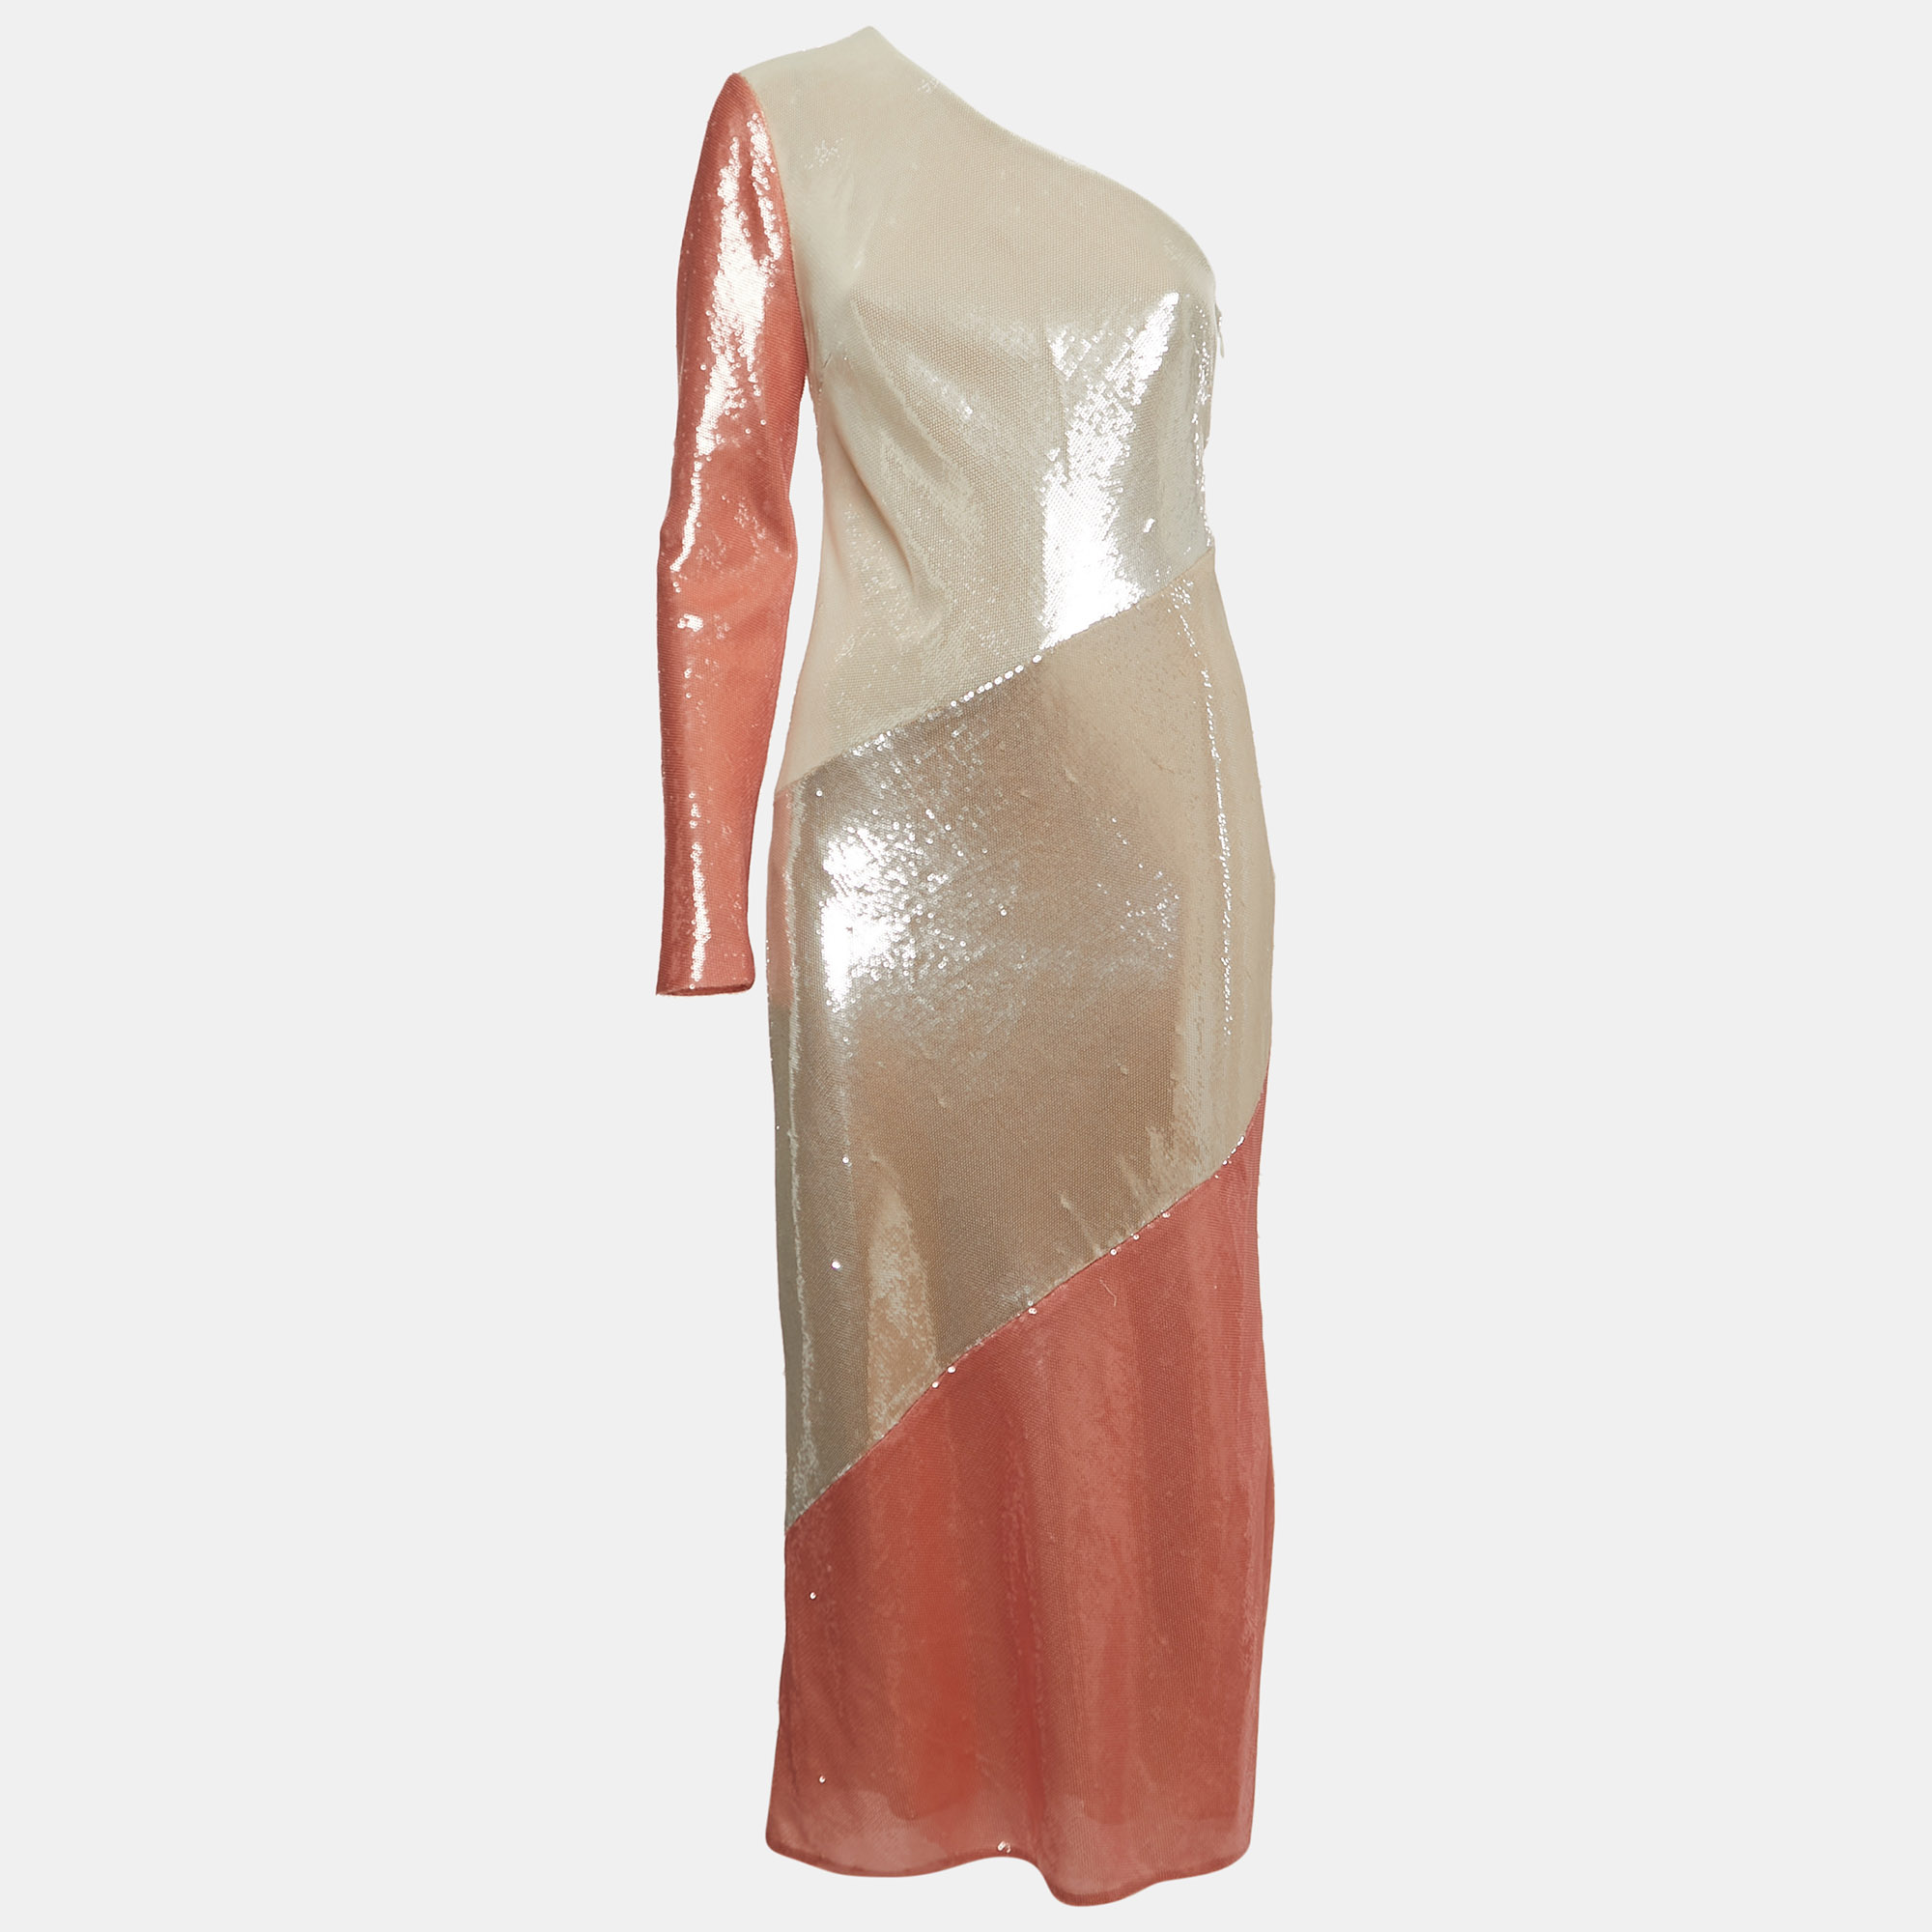 Diane von furstenberg off-white/orange sequined one shoulder dress m